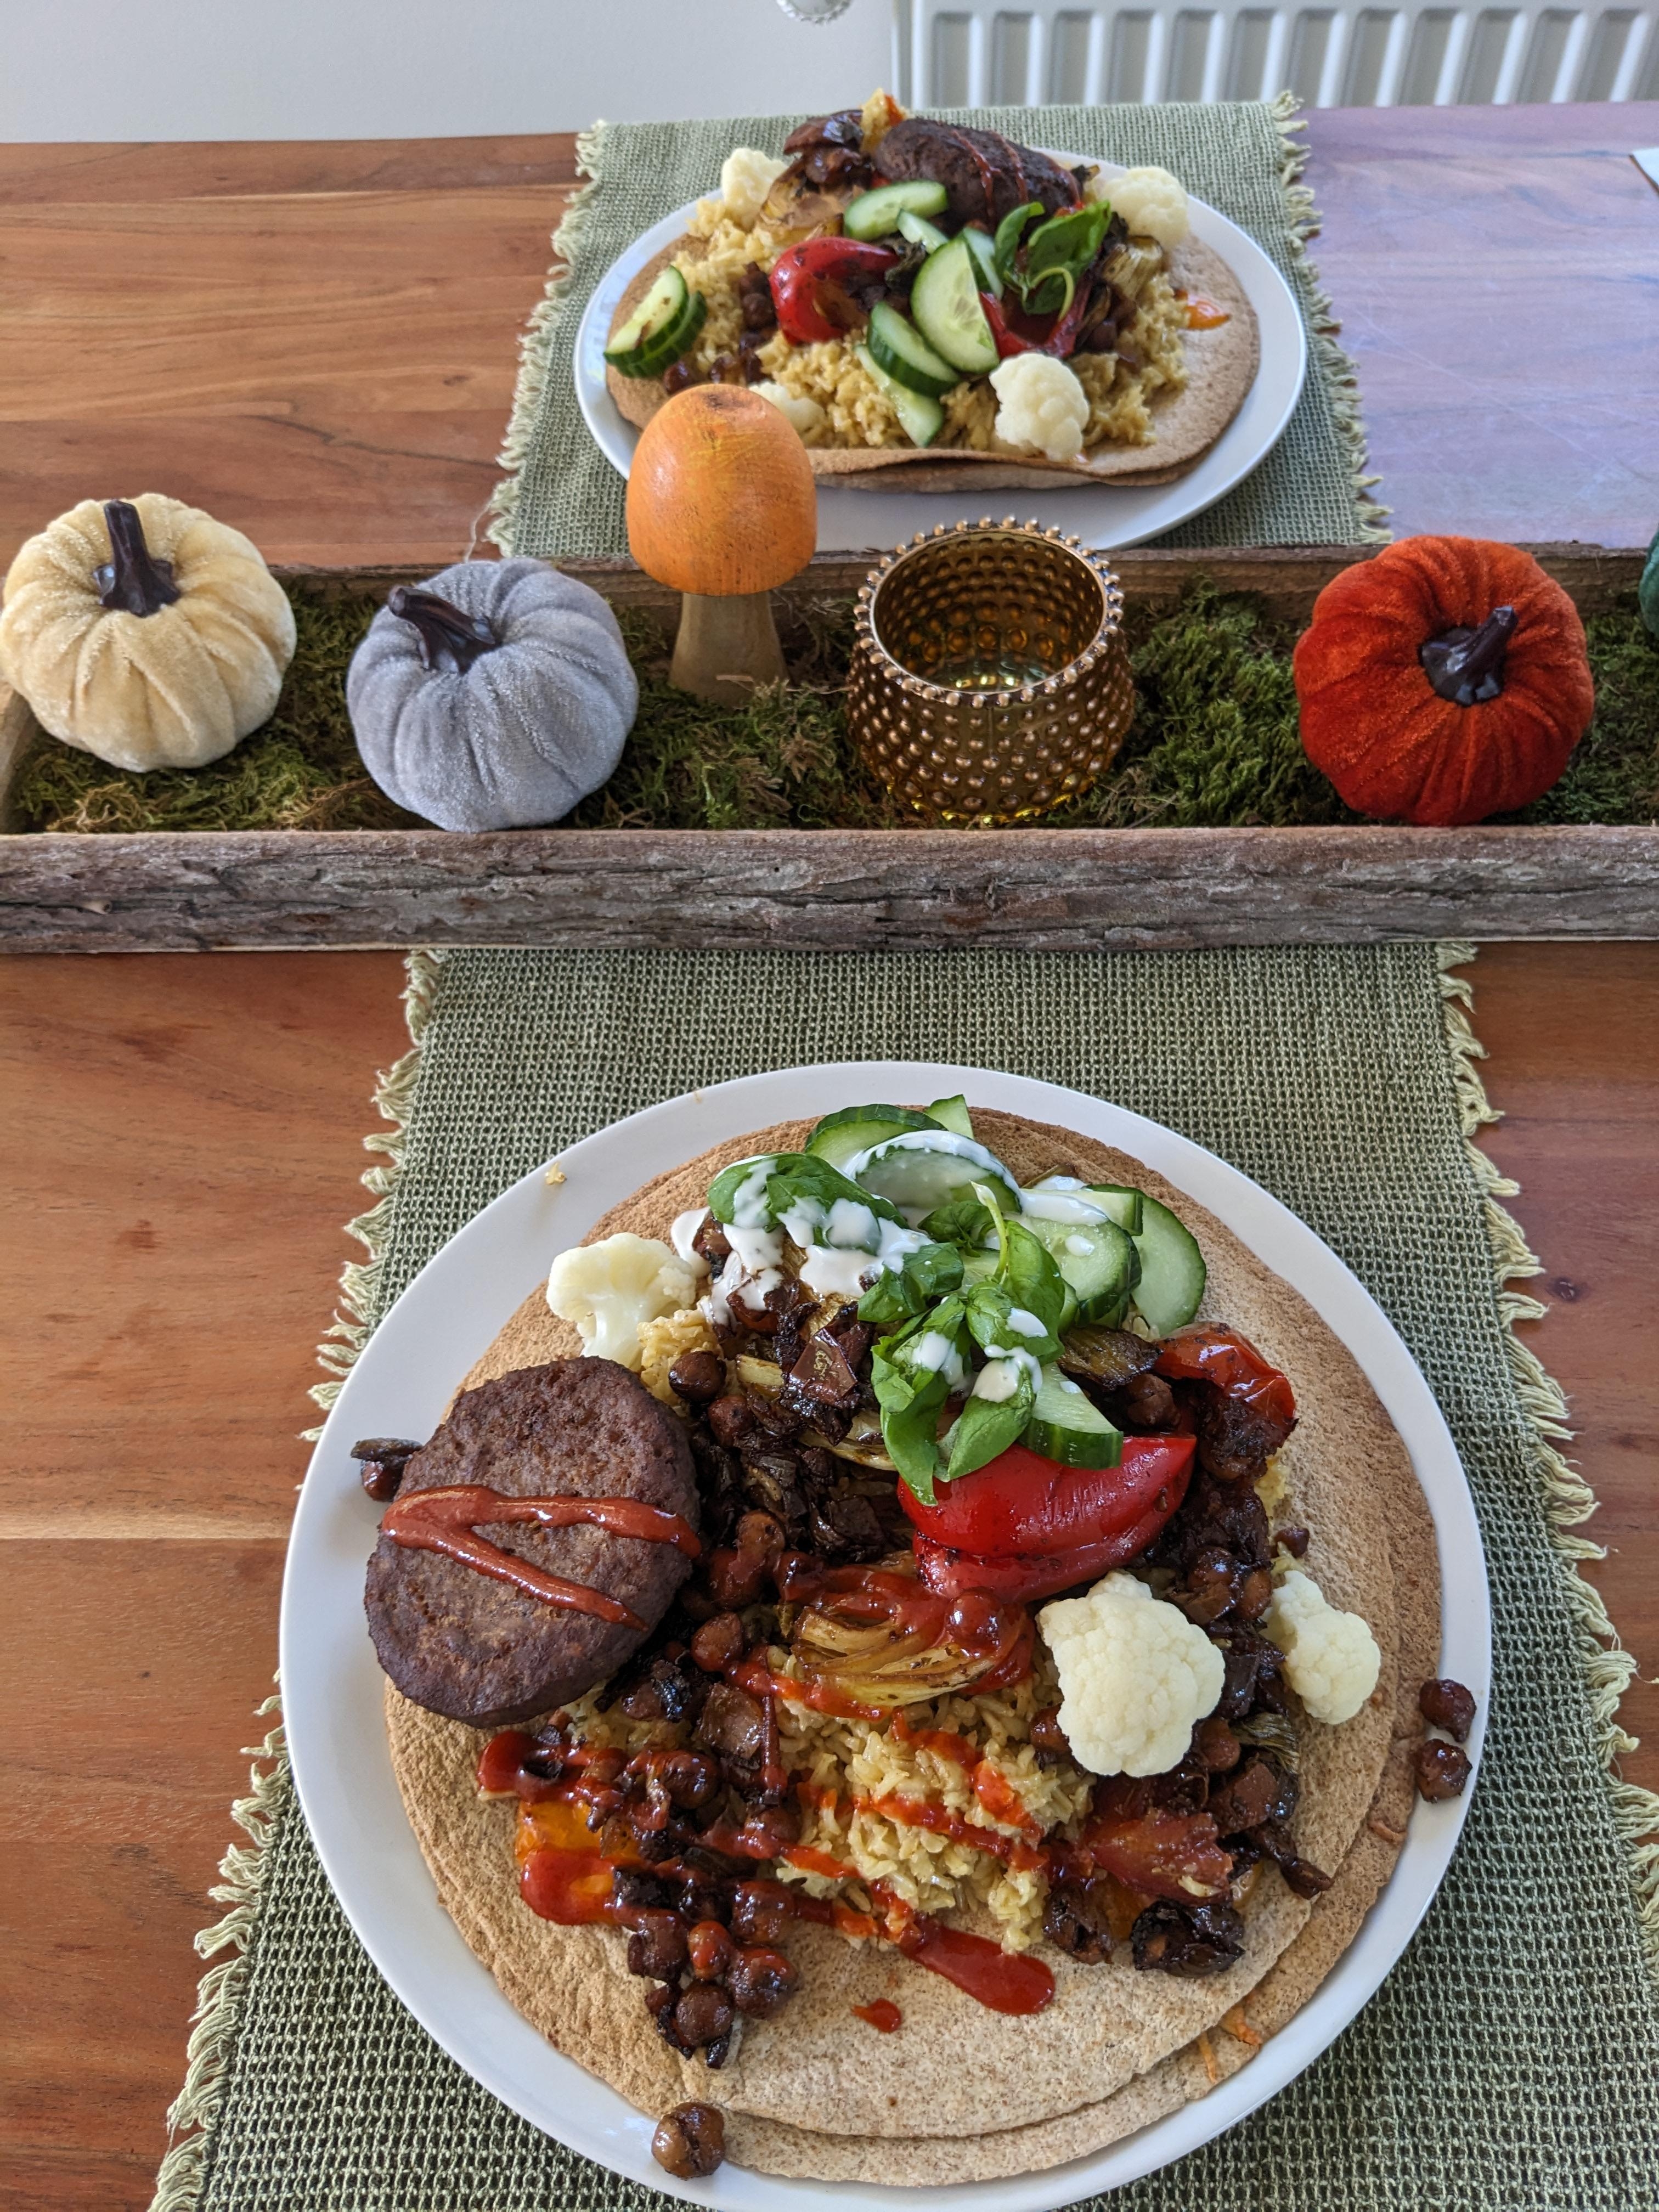 Wrap mit Reis, Gemüse und Frikadellen und Salat belegt 😋 🥗
#lecker #food #wrap #salat